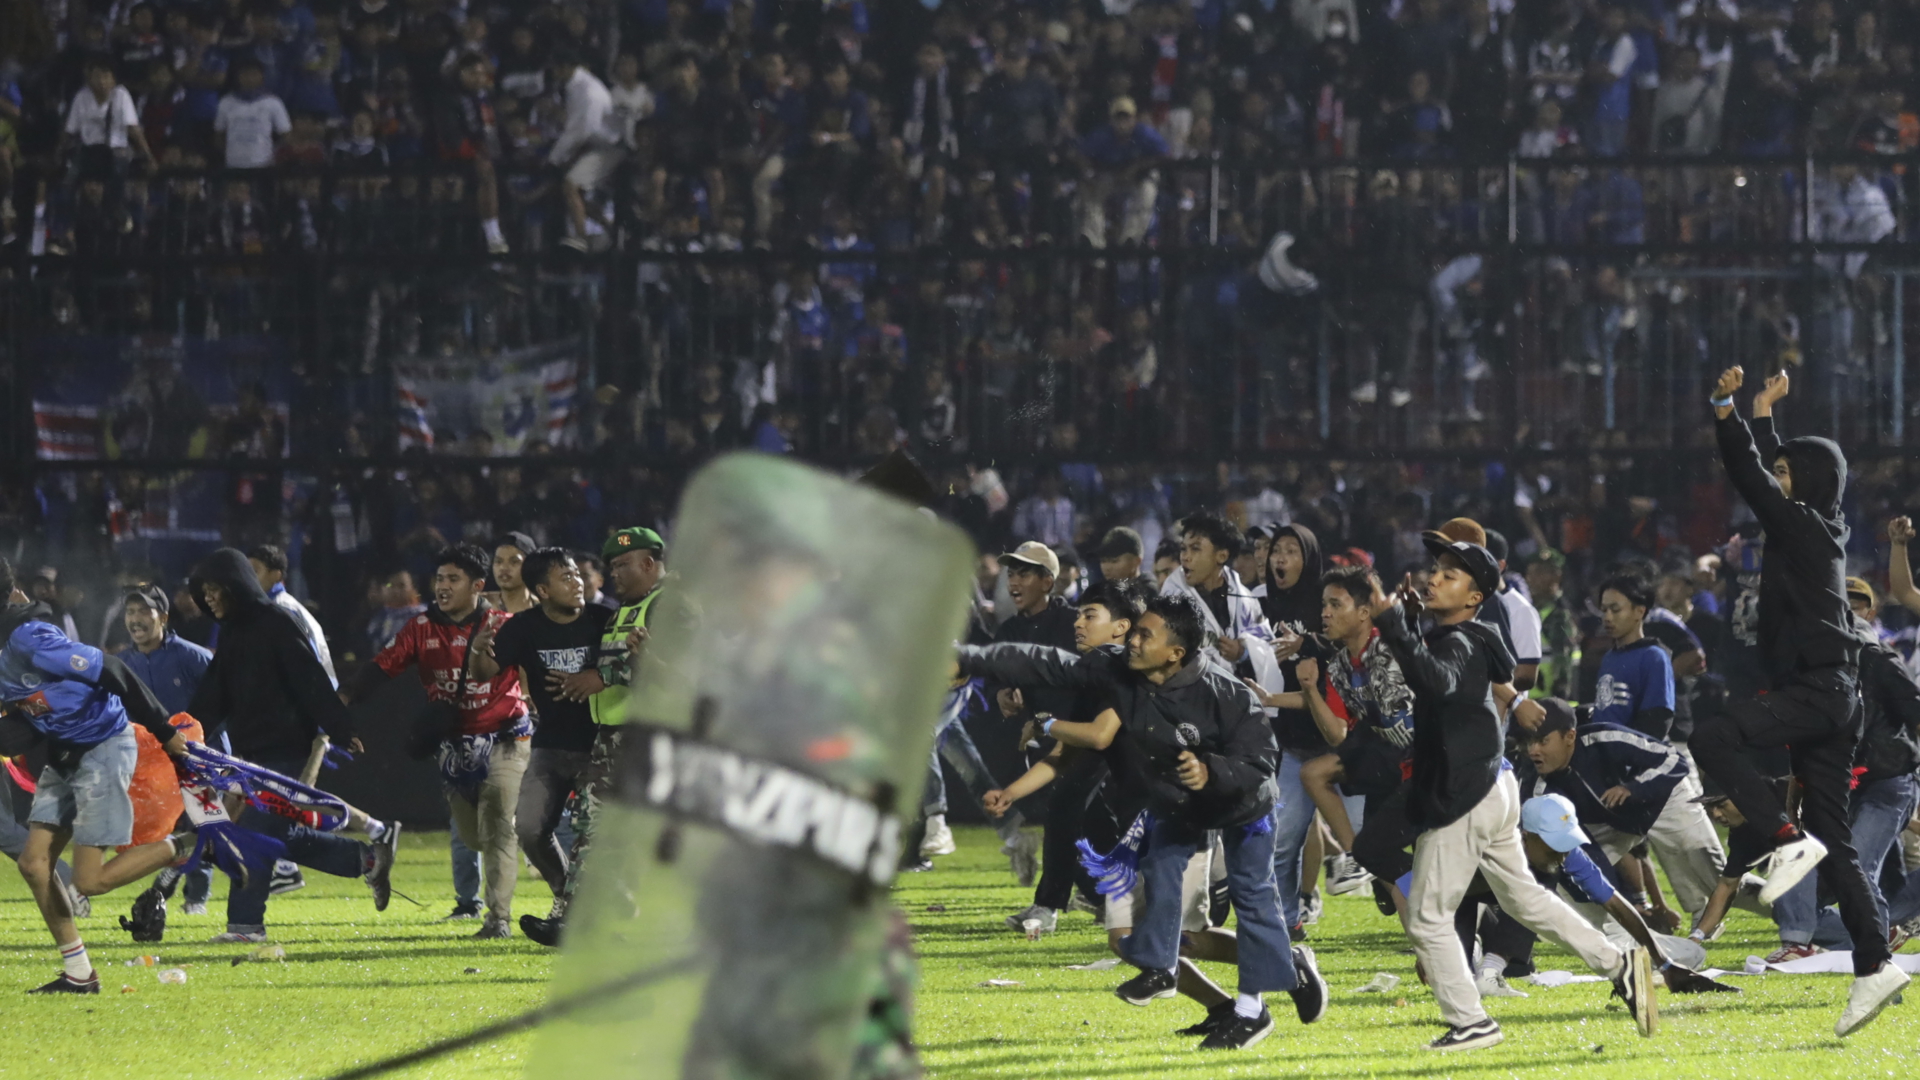 Setelah pertandingan sepak bola di Indonesia: Lebih dari 170 tewas dalam kepanikan massal